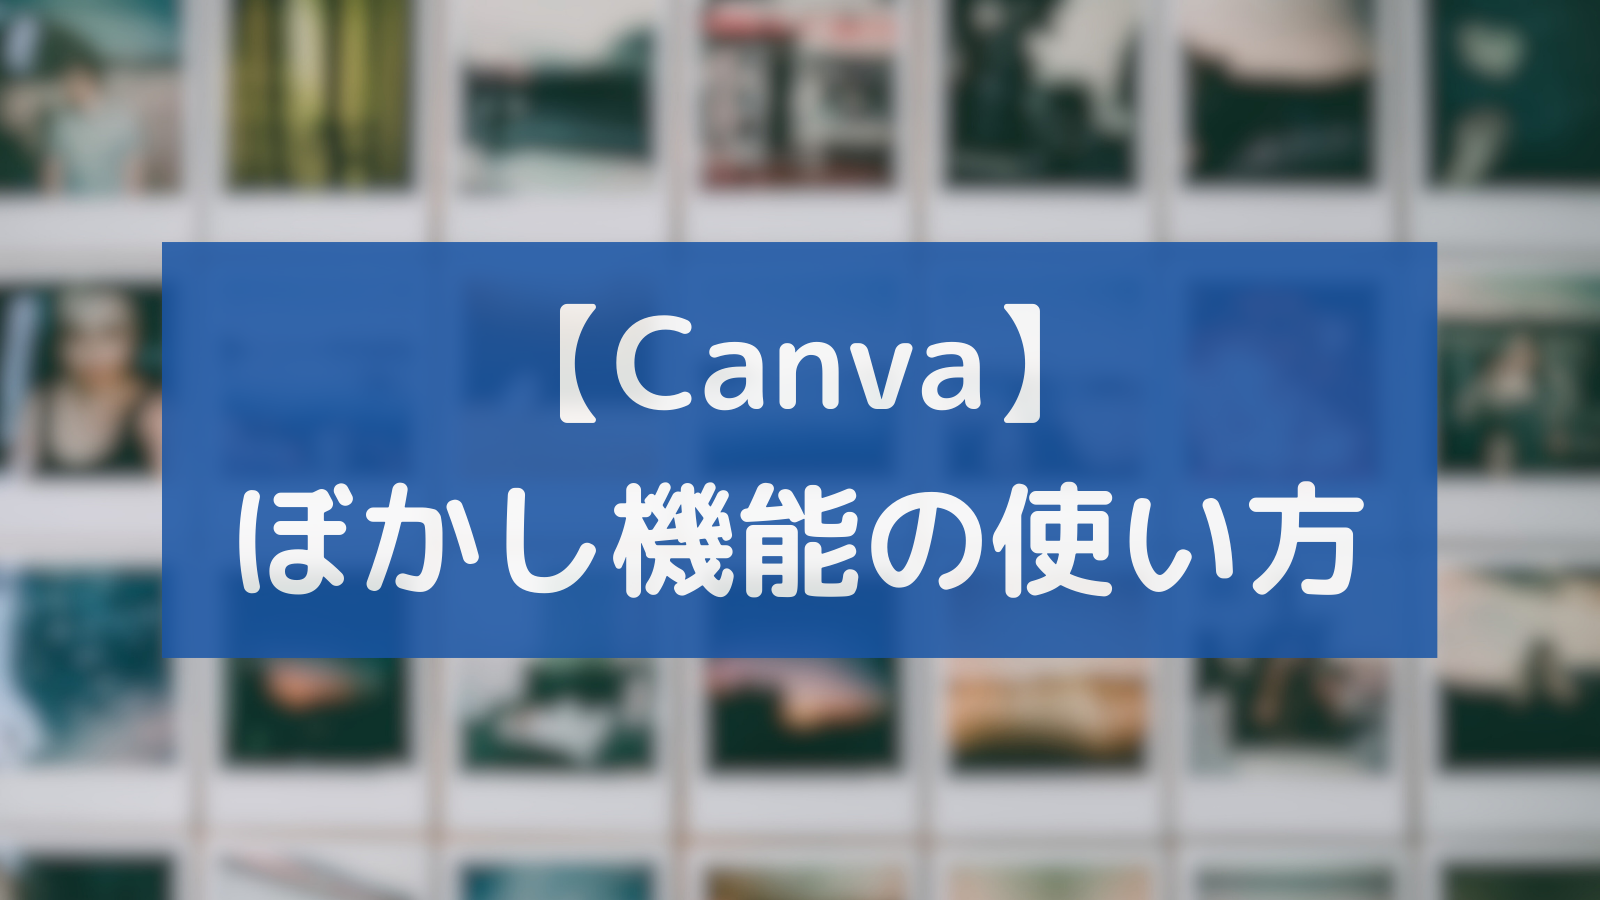 【Canva】ぼかし機能の使い方